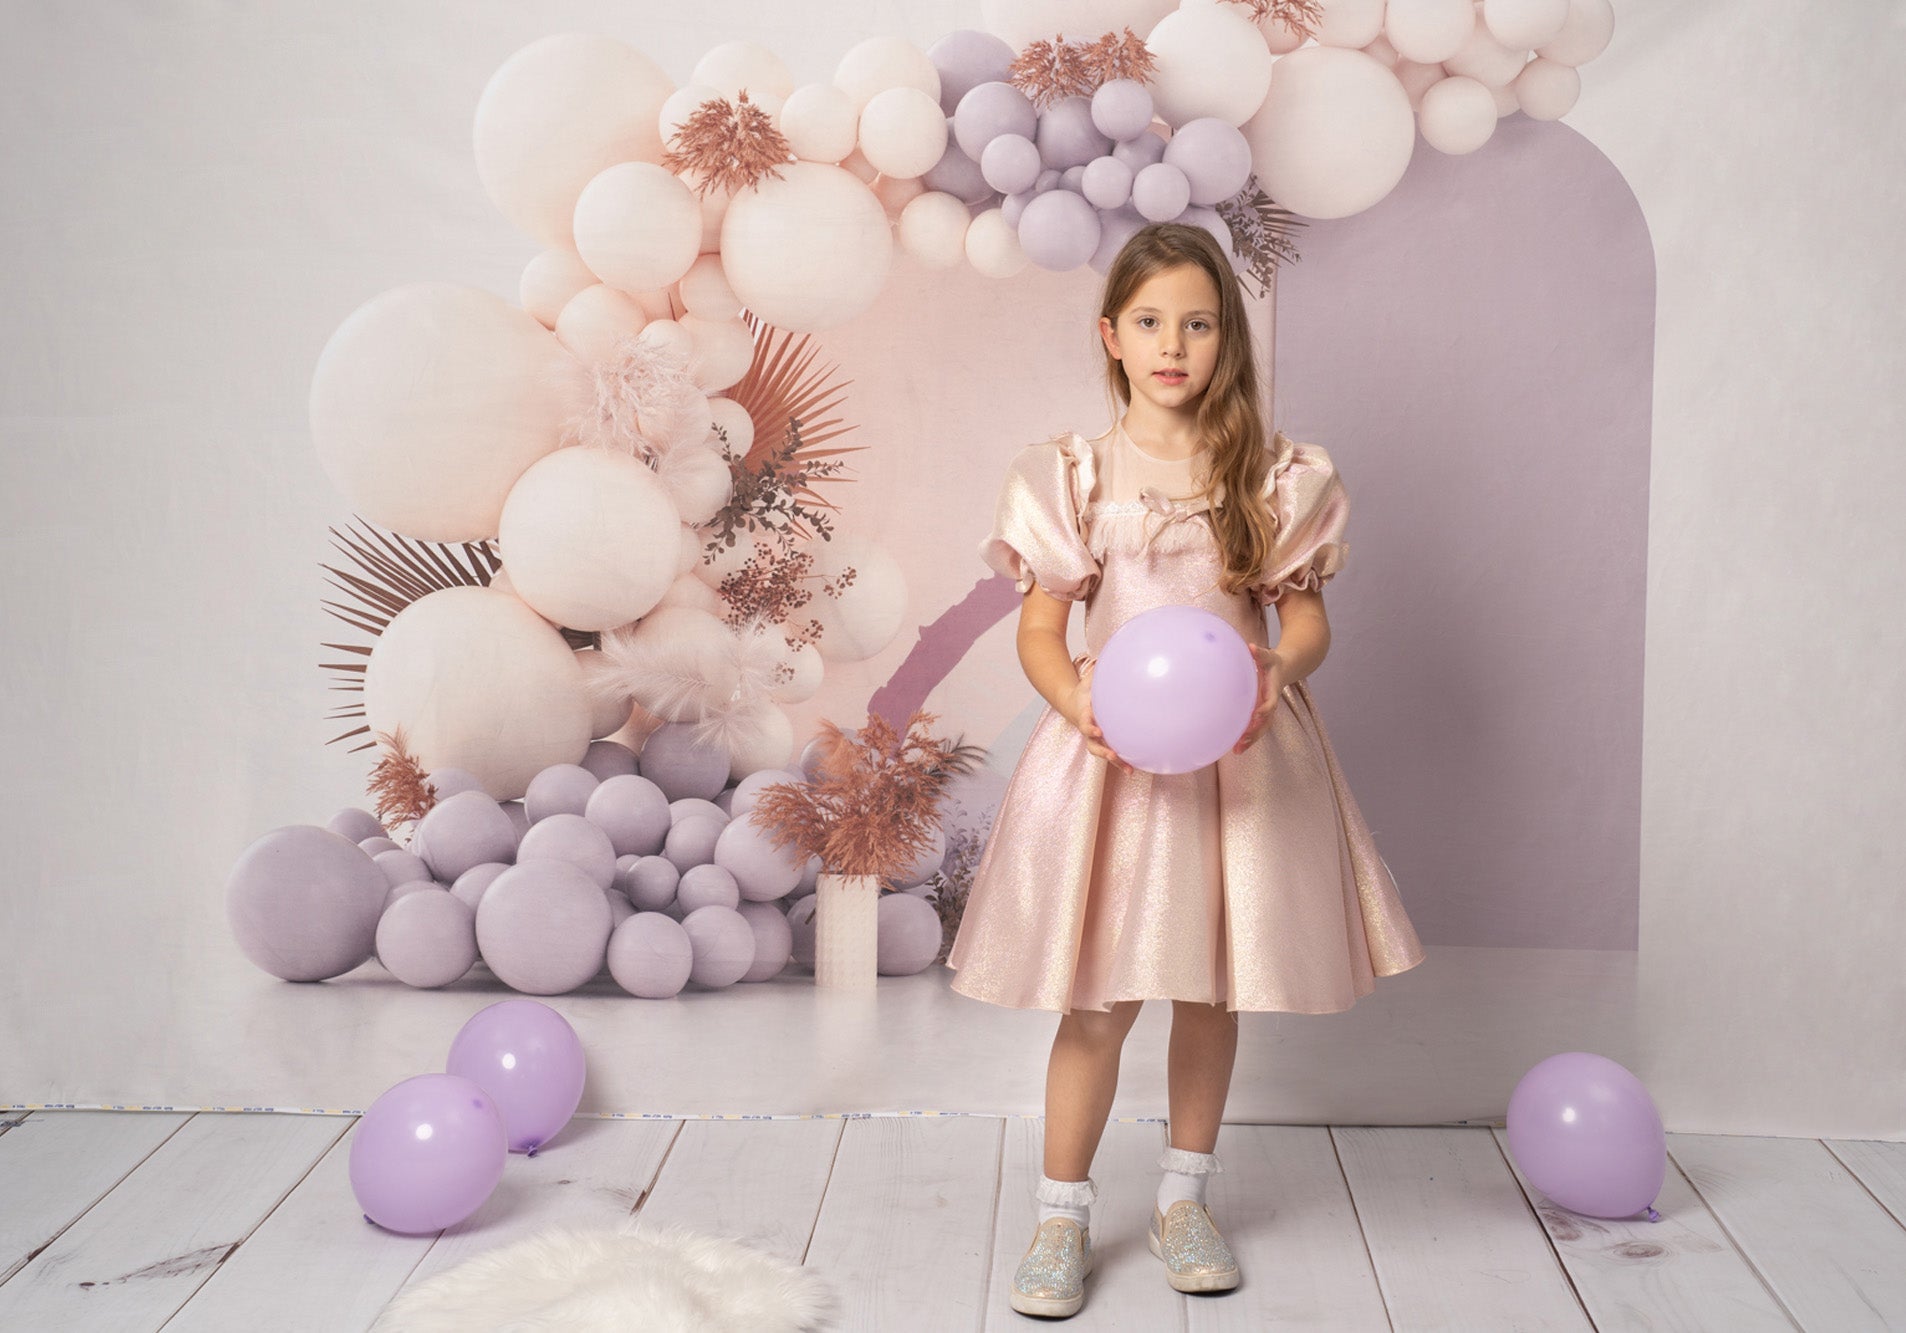 Kate Purple Boho Balloons Fleece Backdrop Cake Smash Designed by Uta Mueller Photography